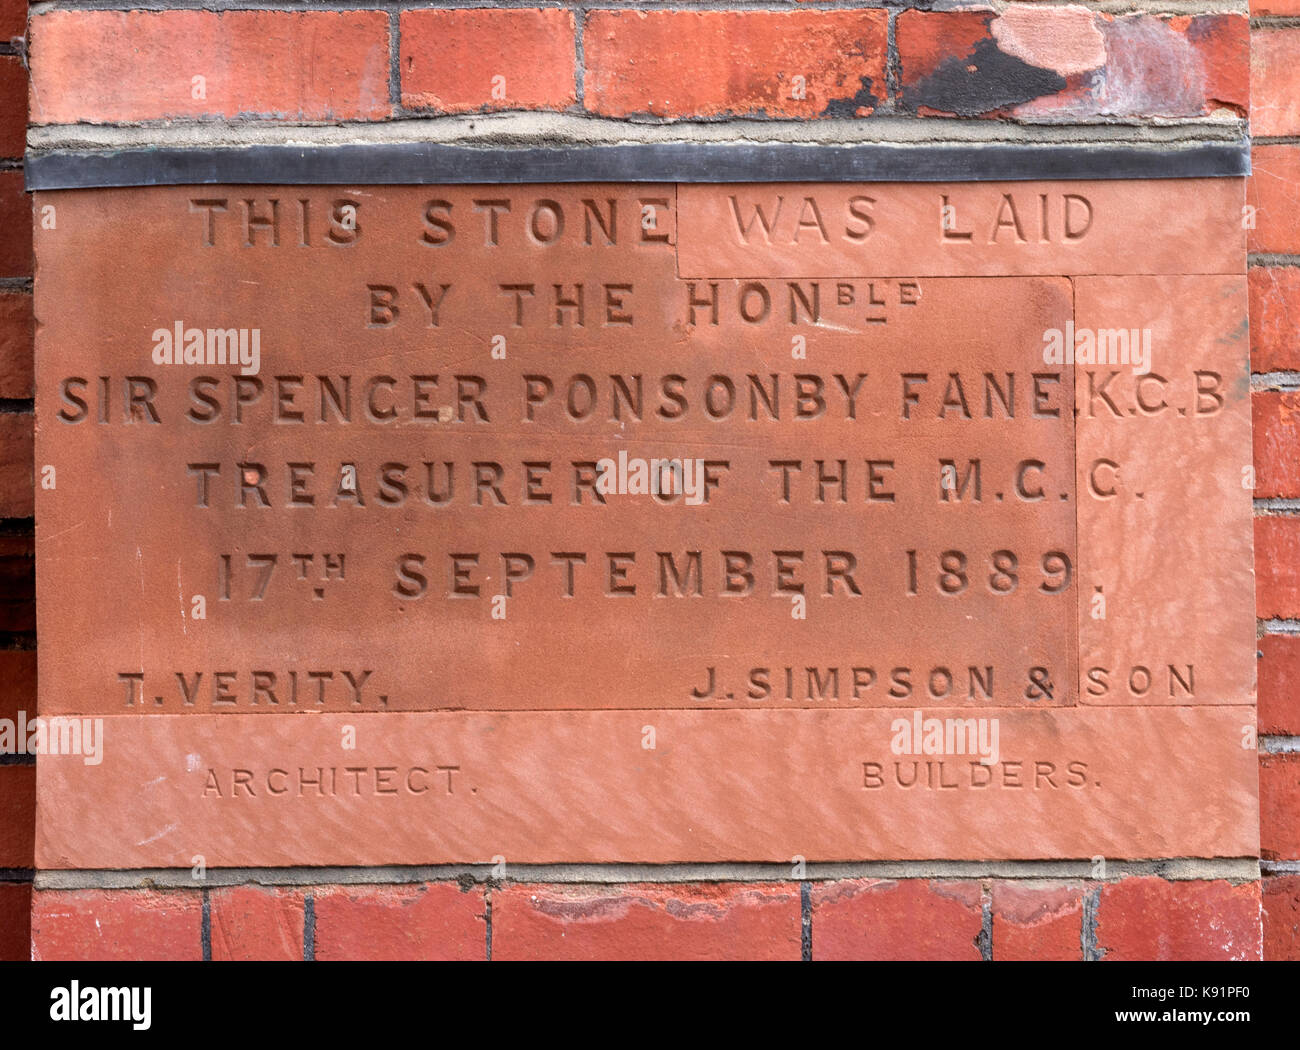 Pietra commemorativa per il sir Spencer Fane ponsonby ex camarlingo del m.c.c. al Lords Cricket Ground, St Johns Wood, Londra, Inghilterra, Regno Unito Foto Stock